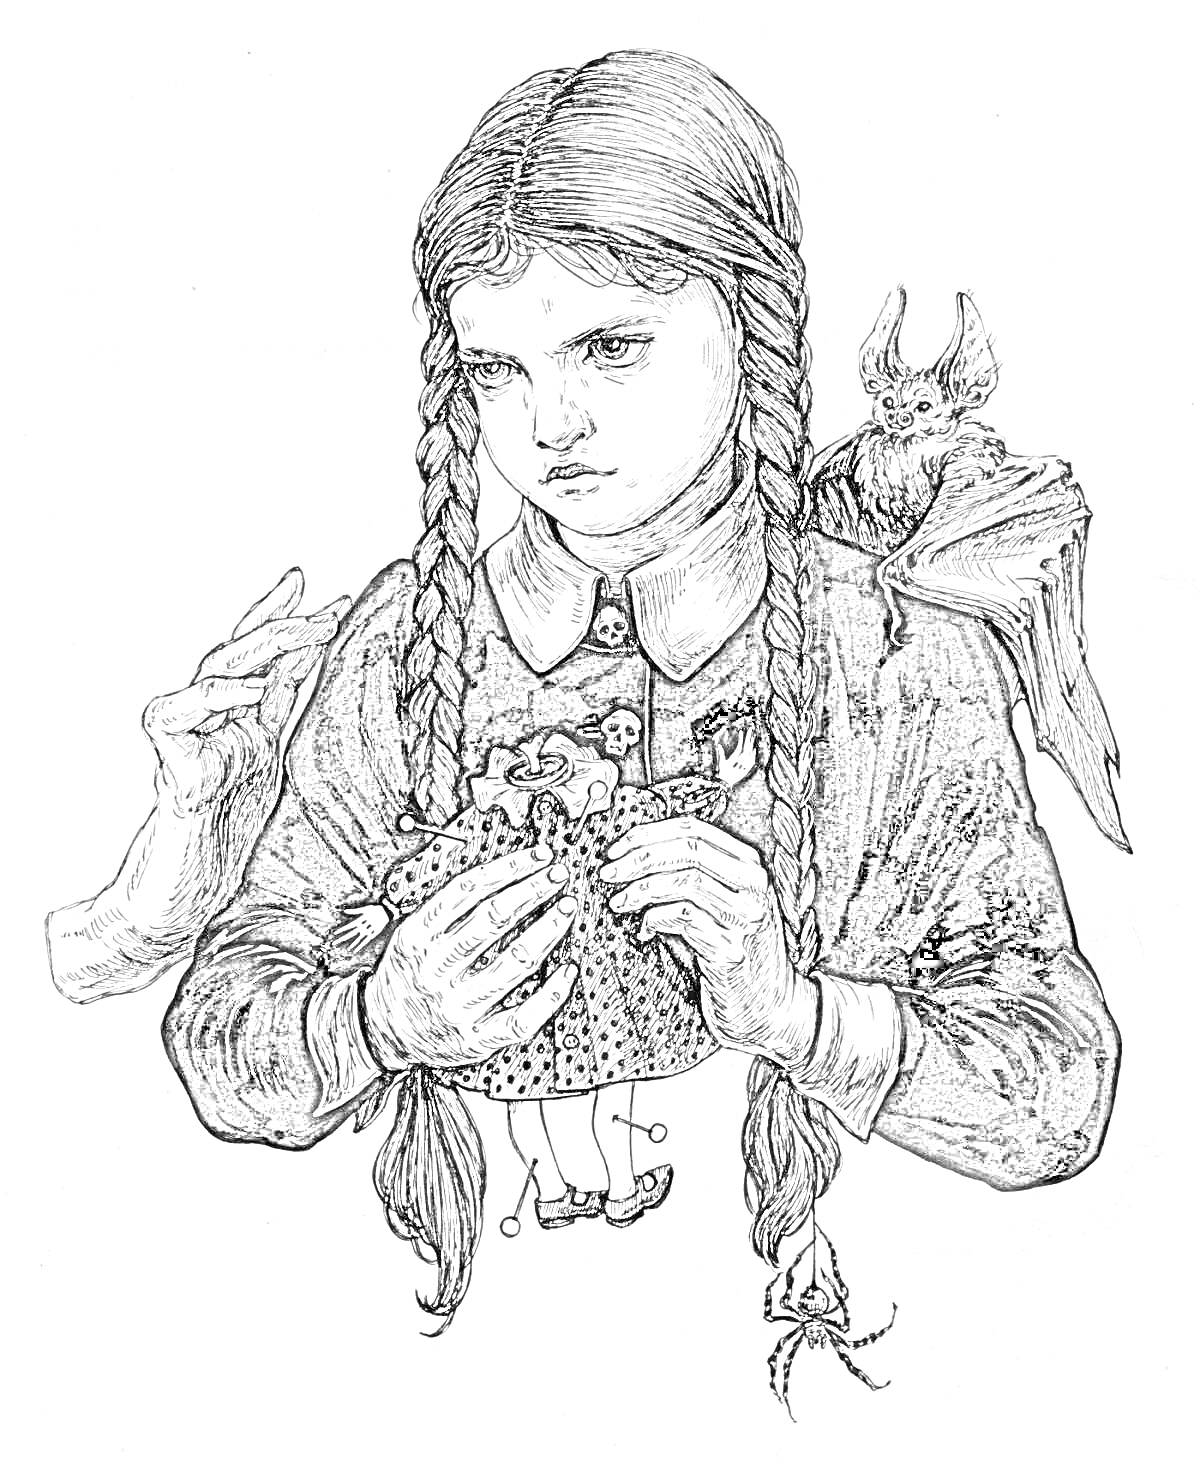 Раскраска Девочка с косичками, держащая куклу, с рукой и летучей мышью на плече.